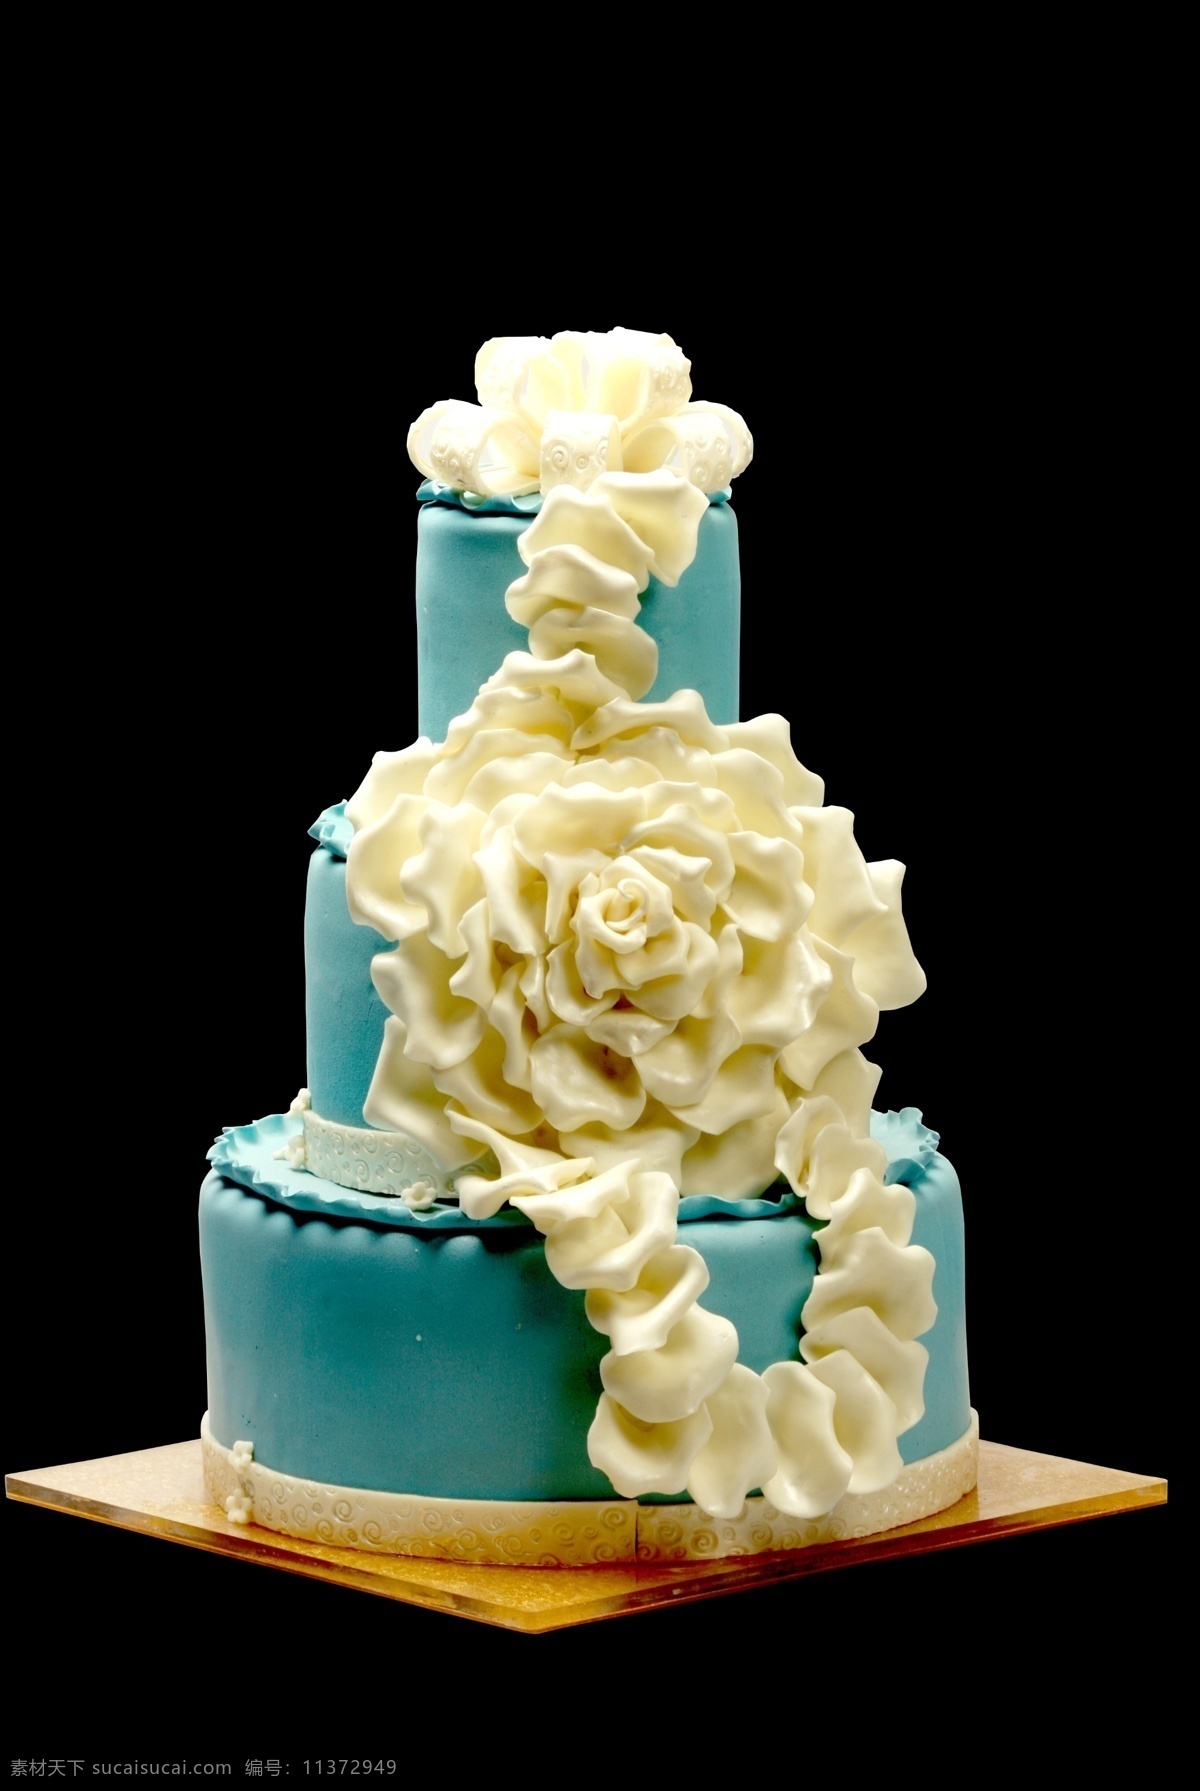 蛋糕 分层 蛋糕设计 源文件 蓝色蛋糕 纯洁美丽 雕花蛋塔 分层蛋糕 psd源文件 餐饮素材